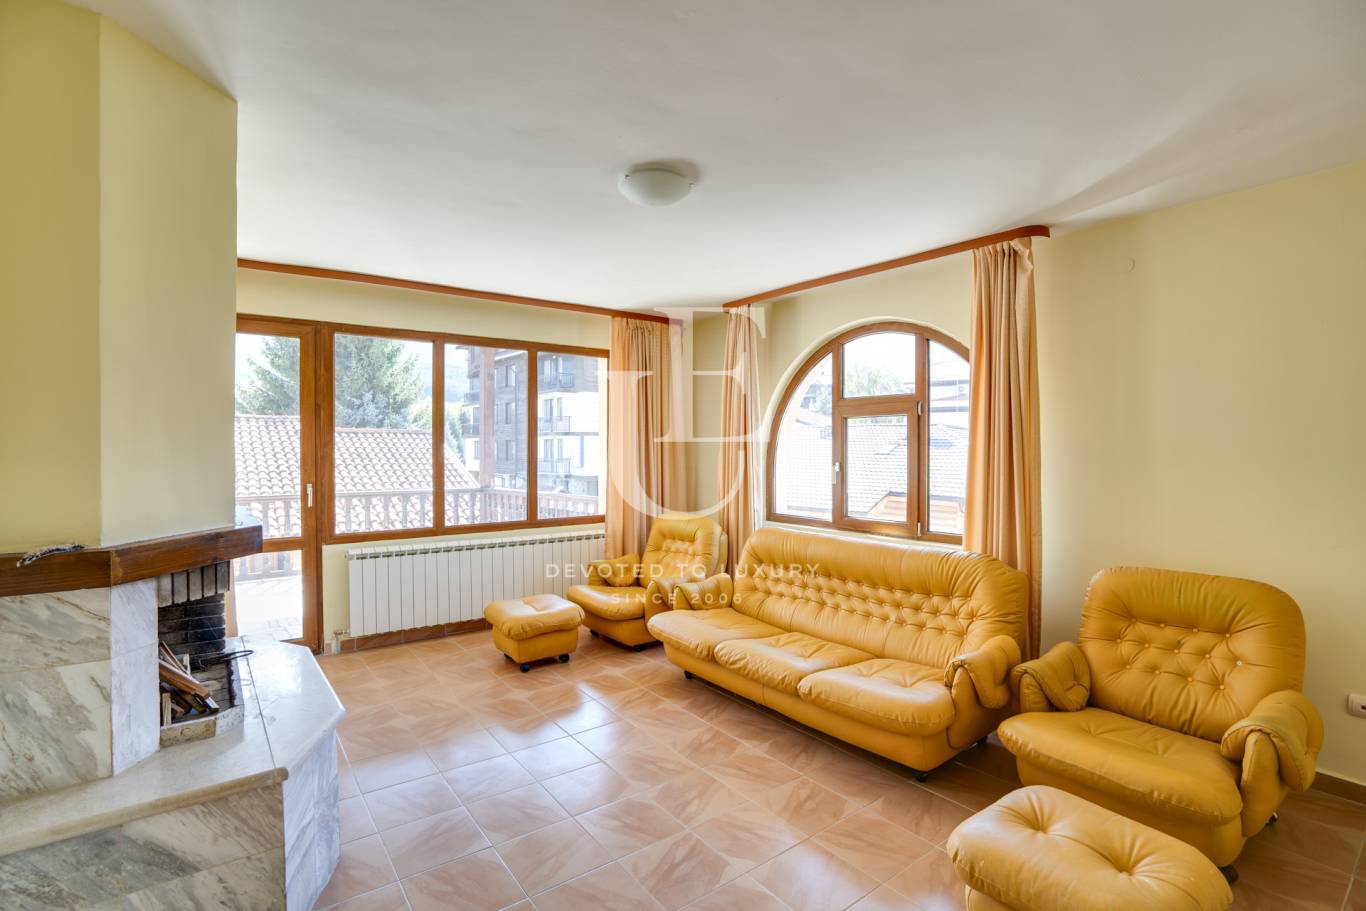 Хотел / Apartment house за продажба в Банско,  - код на имота: E18571 - image 12